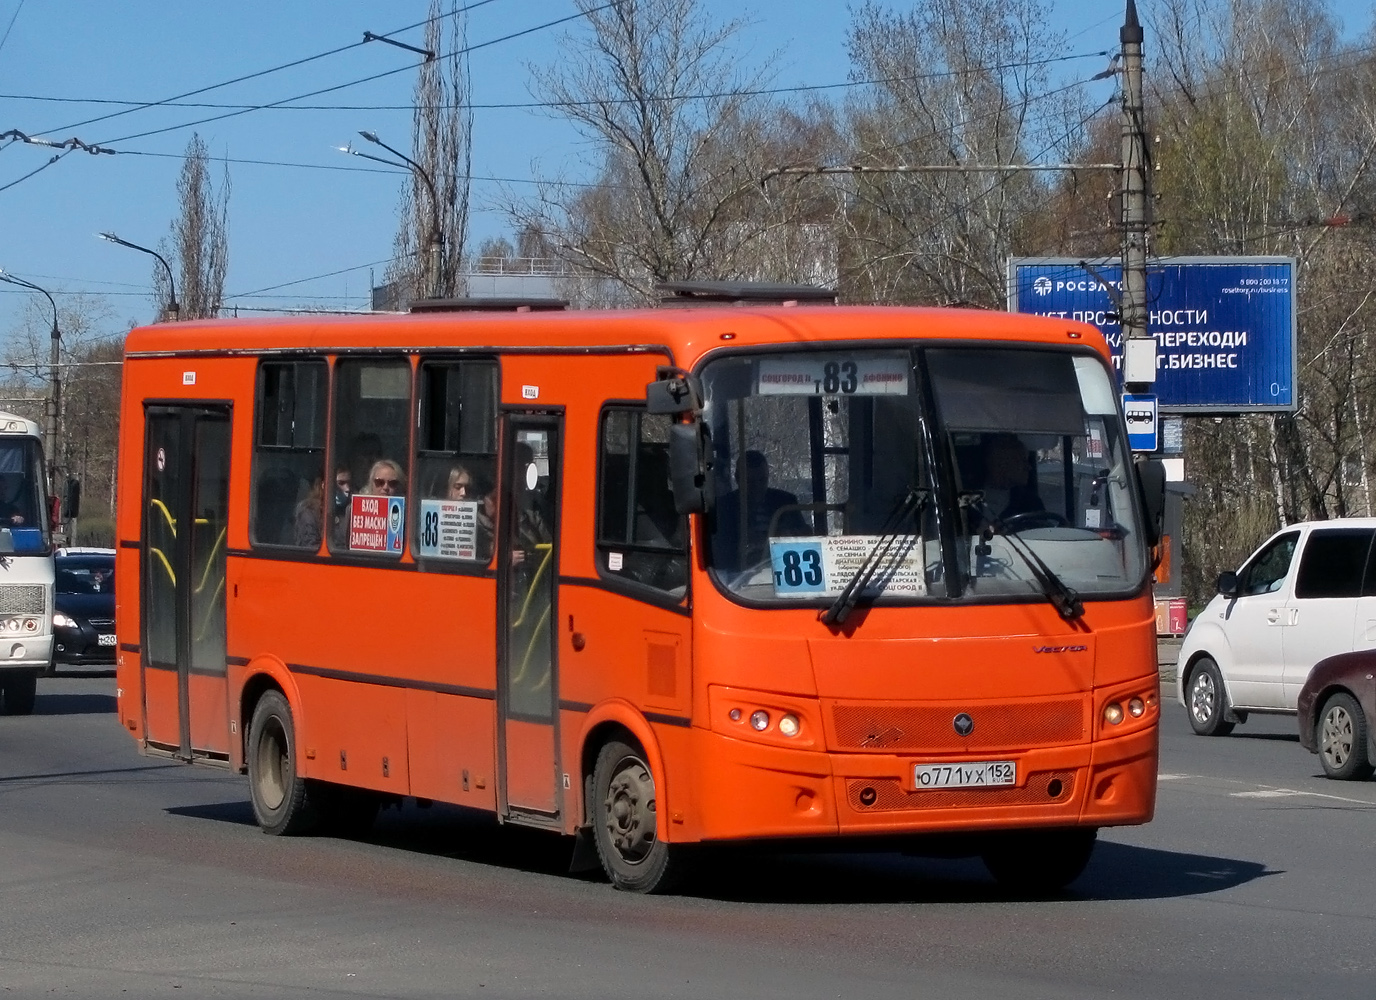 Nizhegorodskaya region, PAZ-320414-05 "Vektor" # О 771 УХ 152